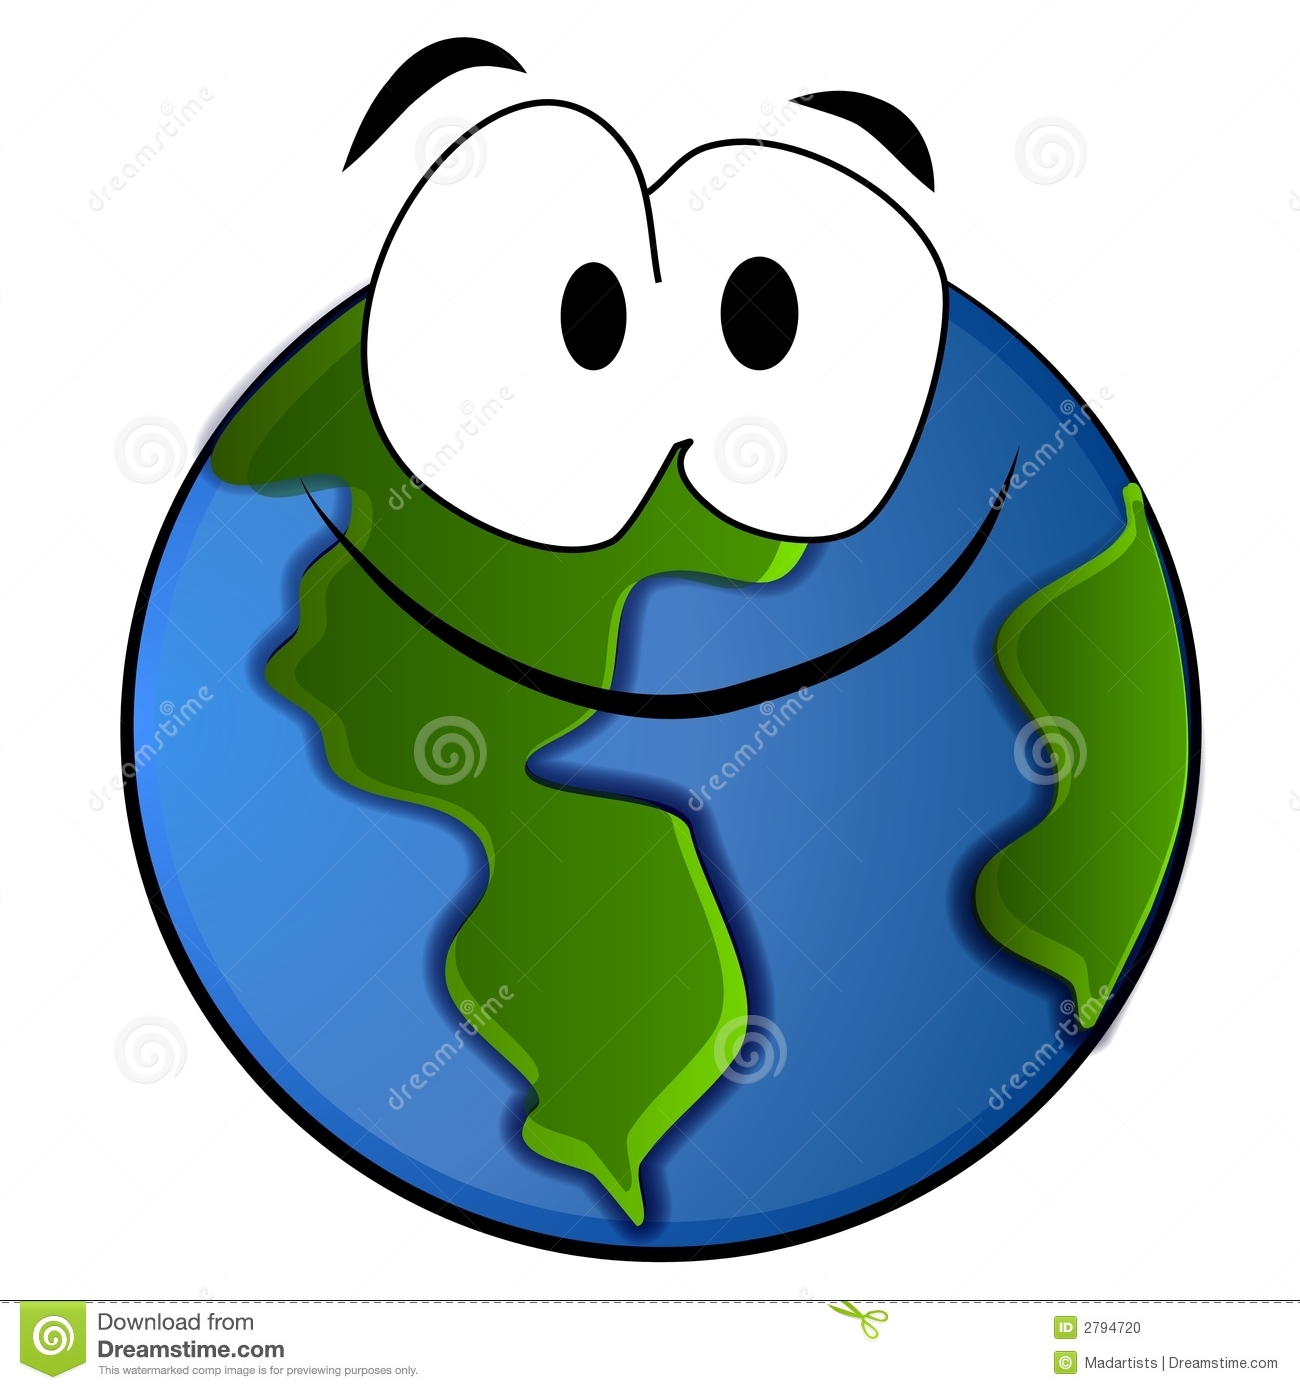 Clip Art Cartoon Illustration Of A Big Fat Smiling Planet Earth